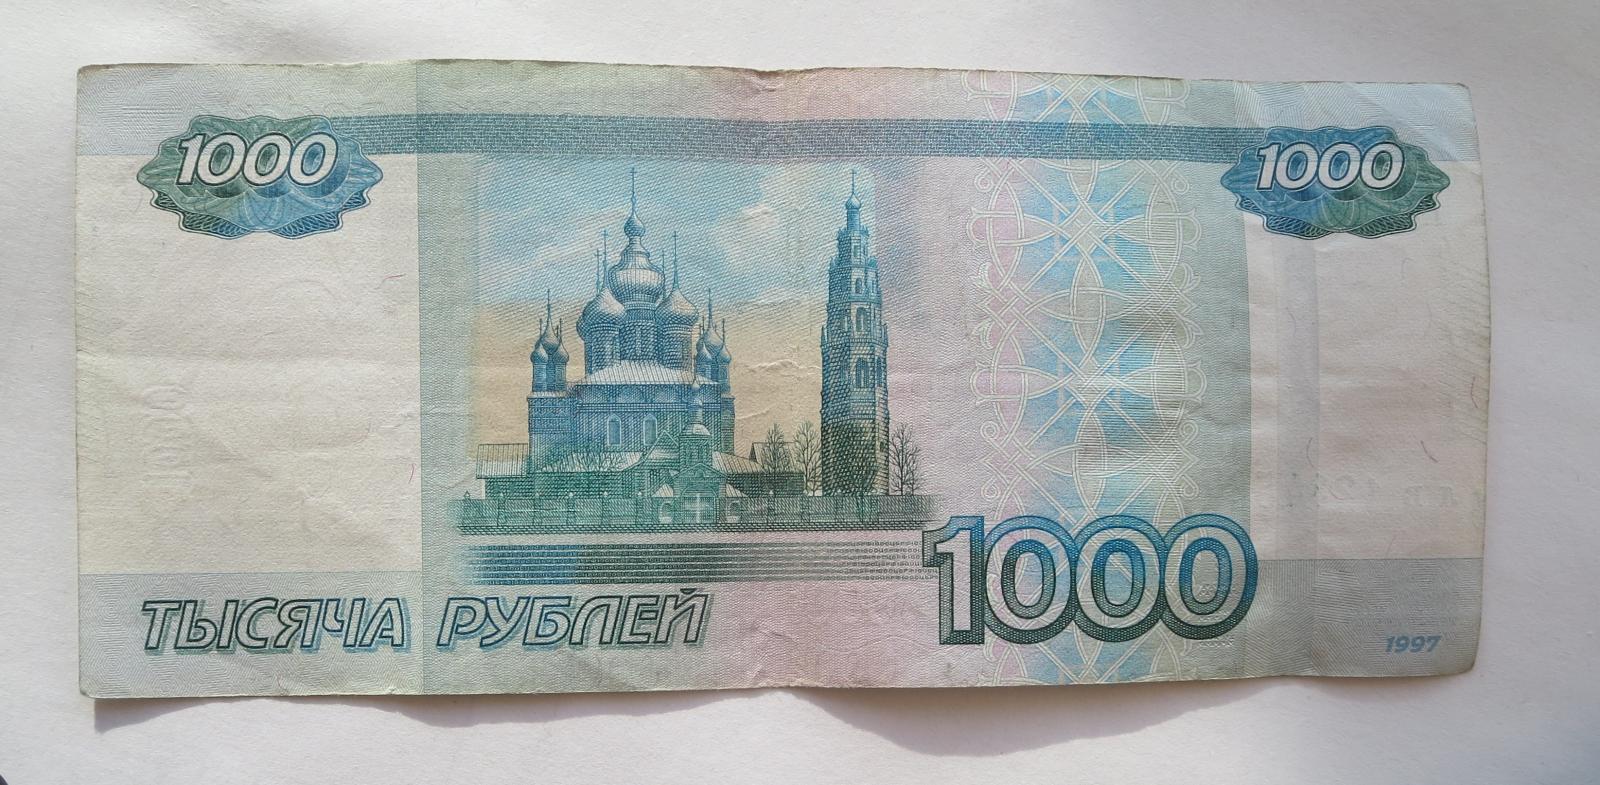 1000 рублей уфа. 1000 Рублей. Банкнота 1000 рублей. Тысяча рублей купюра. 1000 Тысяч рублей.